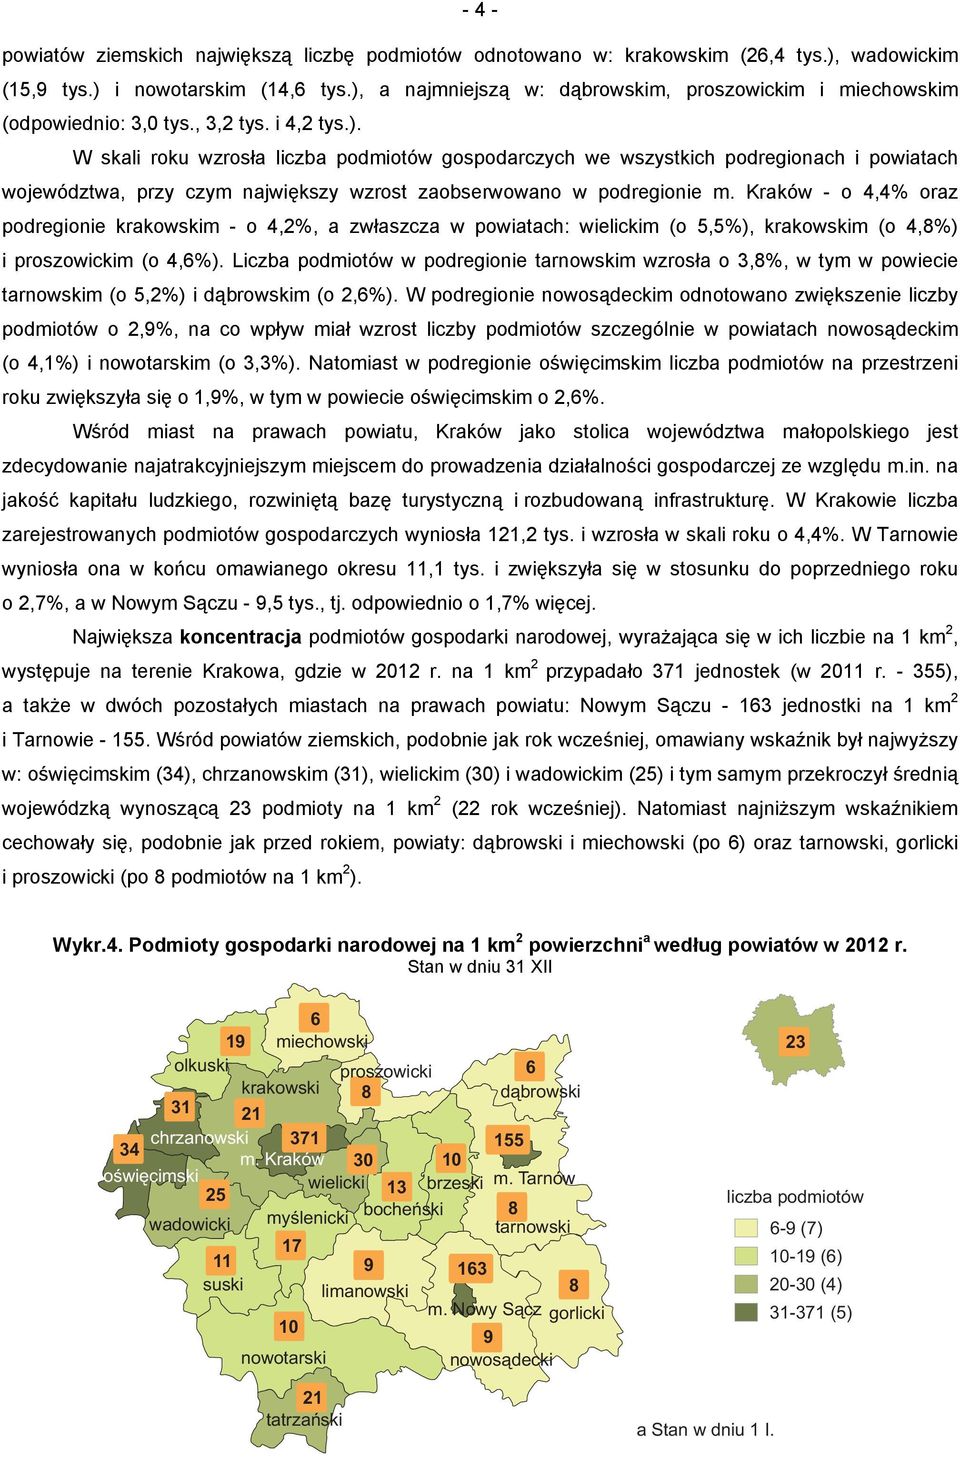 Kraków - o 4,4% oraz podregionie krakowskim - o 4,2%, a zwłaszcza w powiatach: wielickim (o 5,5%), krakowskim (o 4,8%) i proszowickim (o 4,6%).